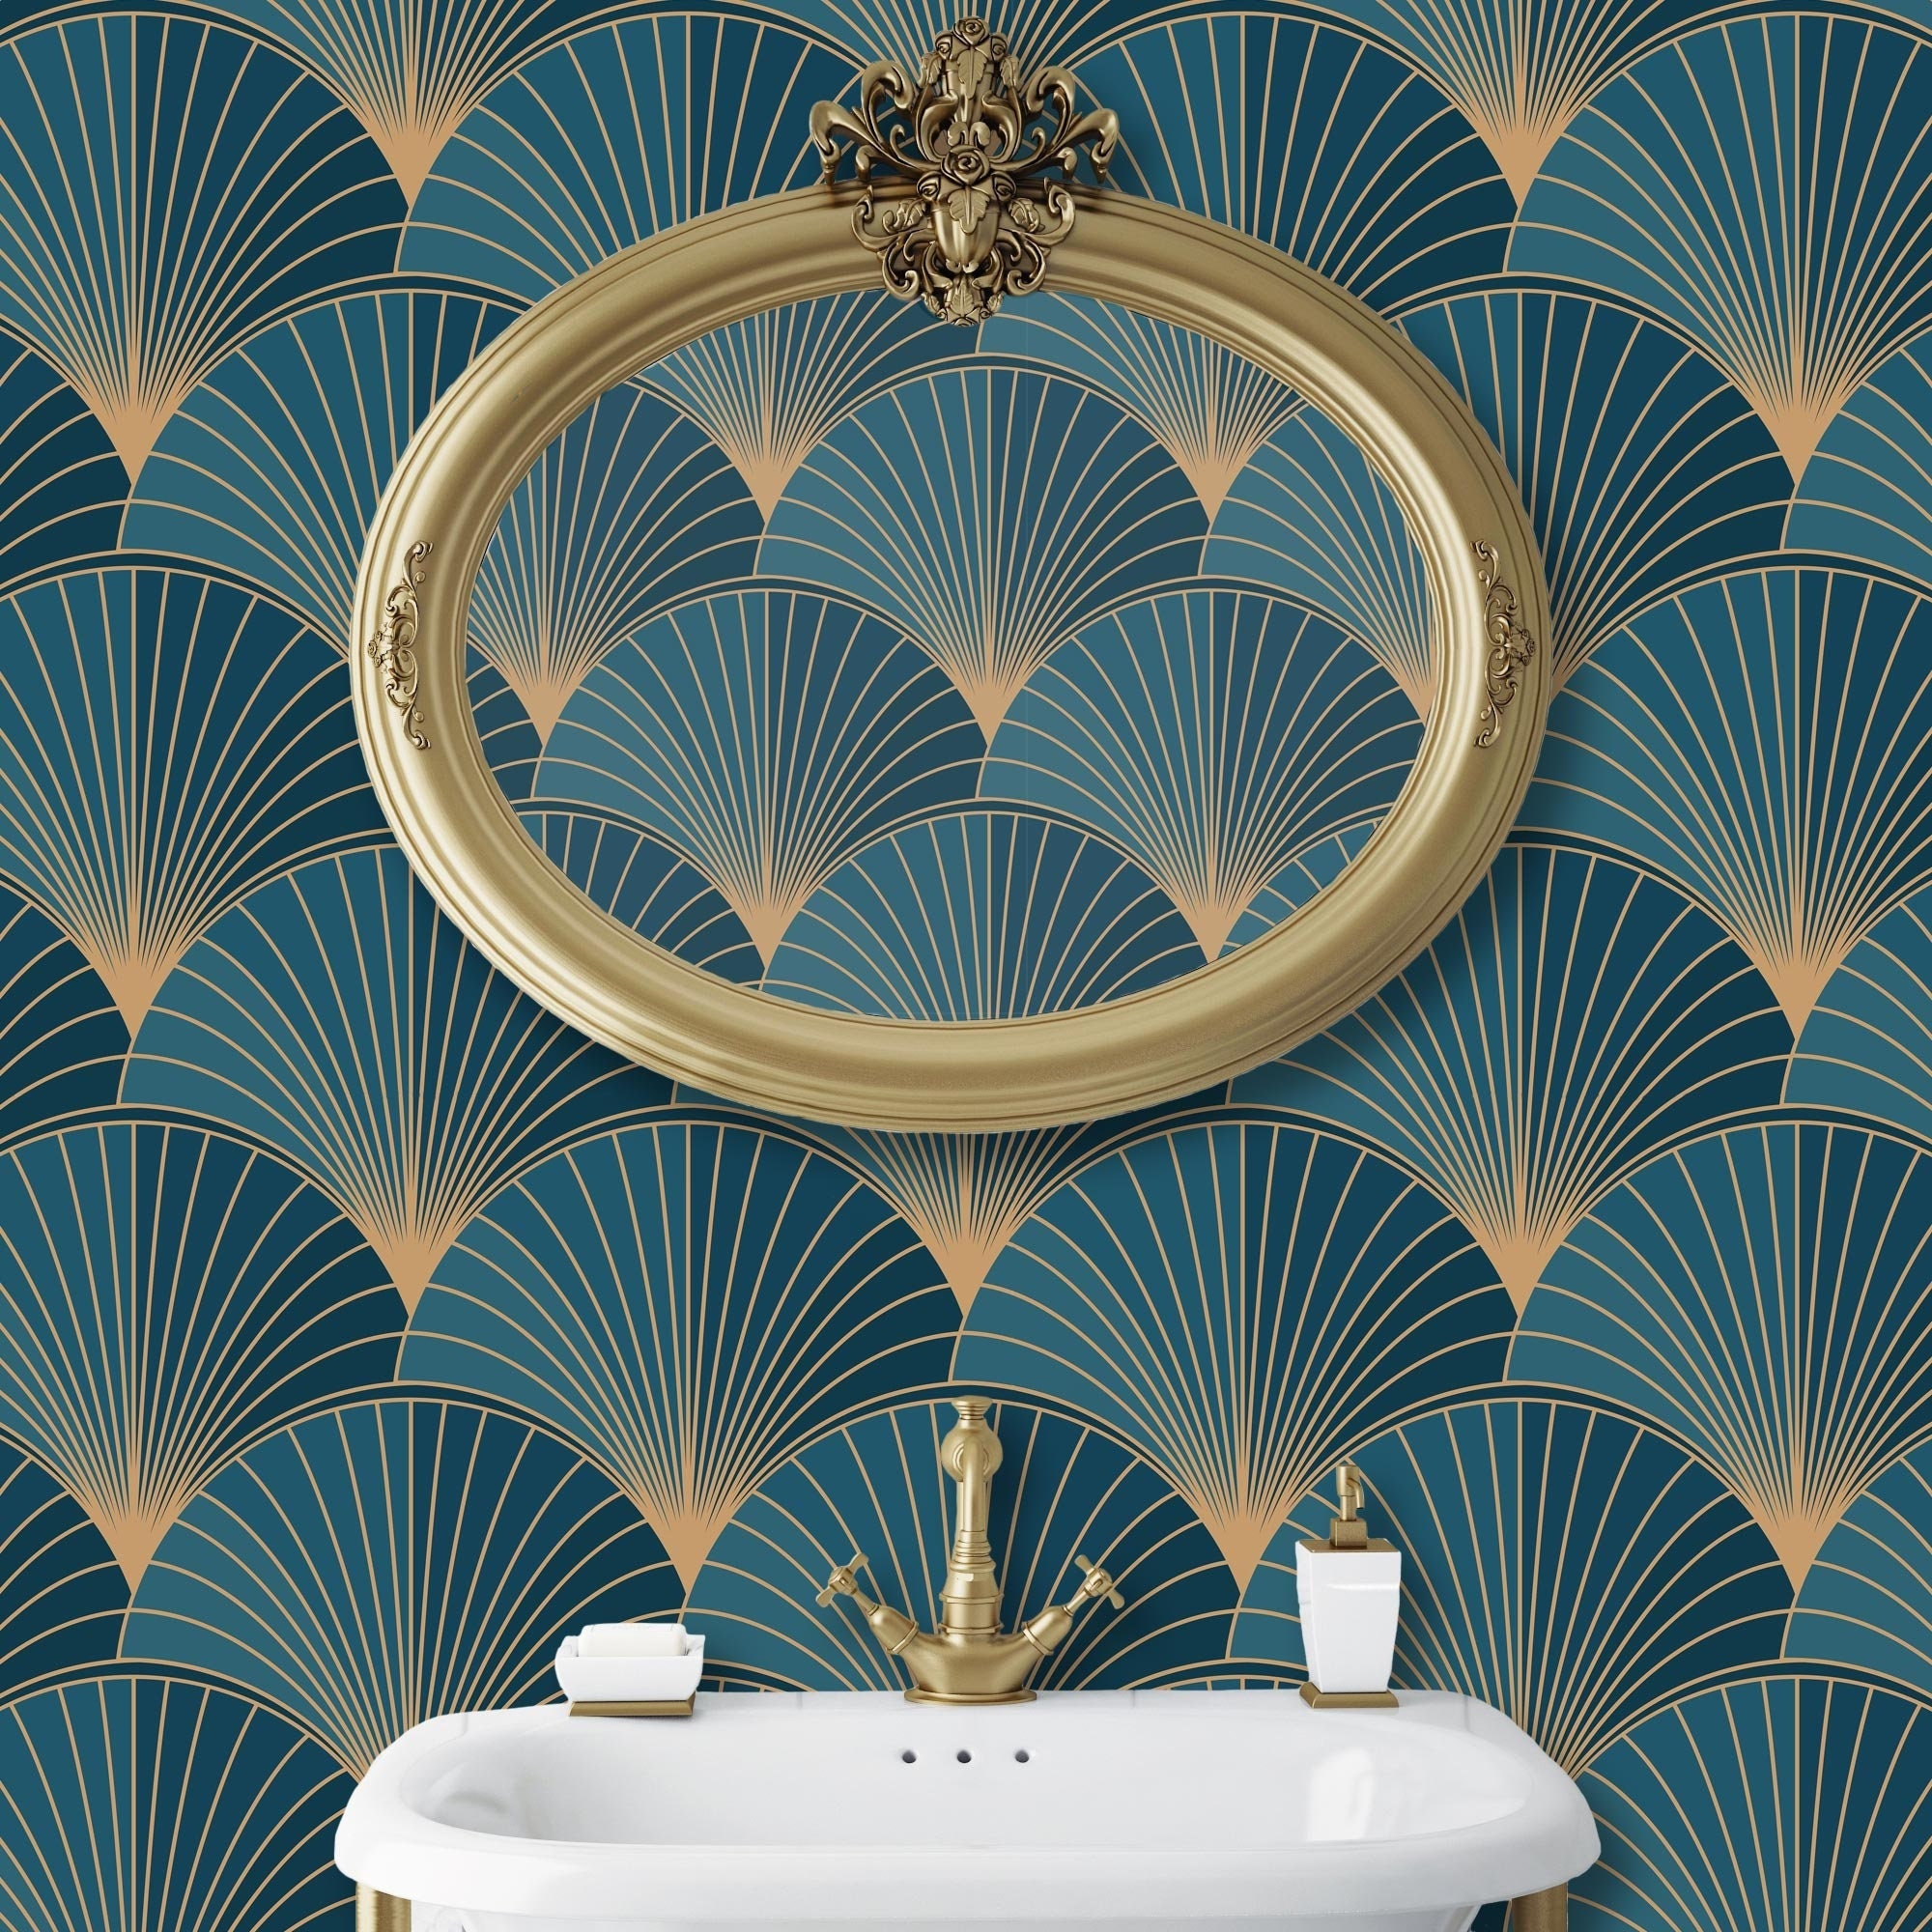 Art-Deco Wallpaper | WallpaperMural.com